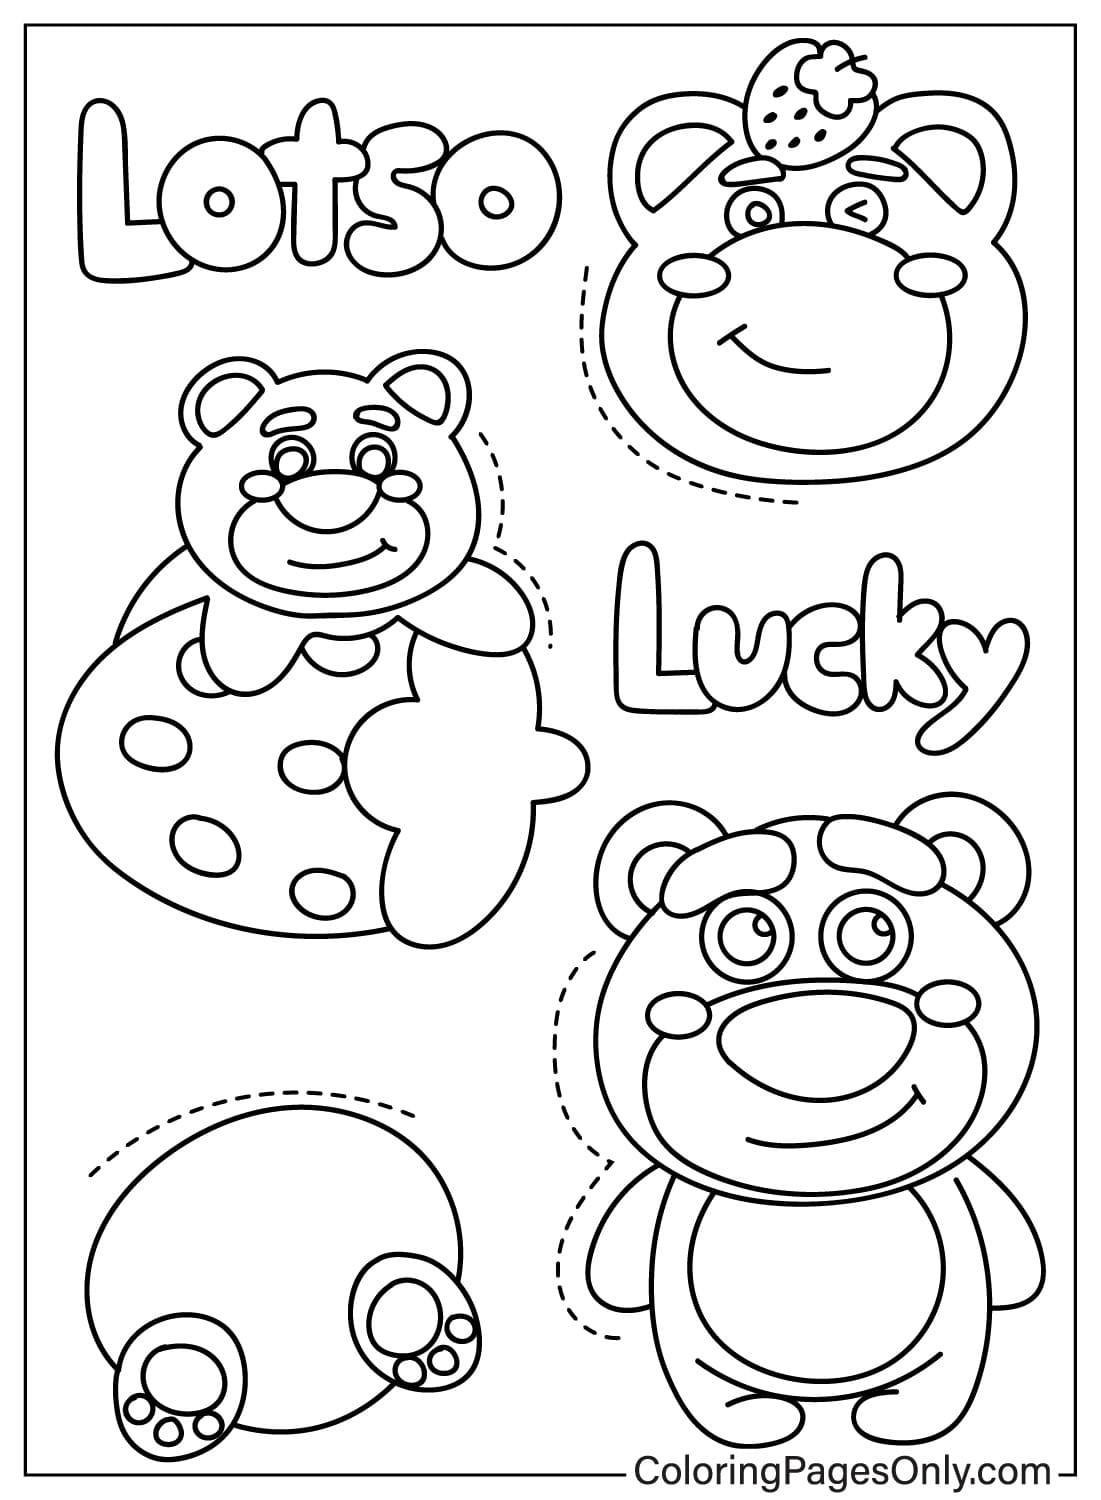 Раскраска Медведь Лотсо для печати от Медведя Лотсо